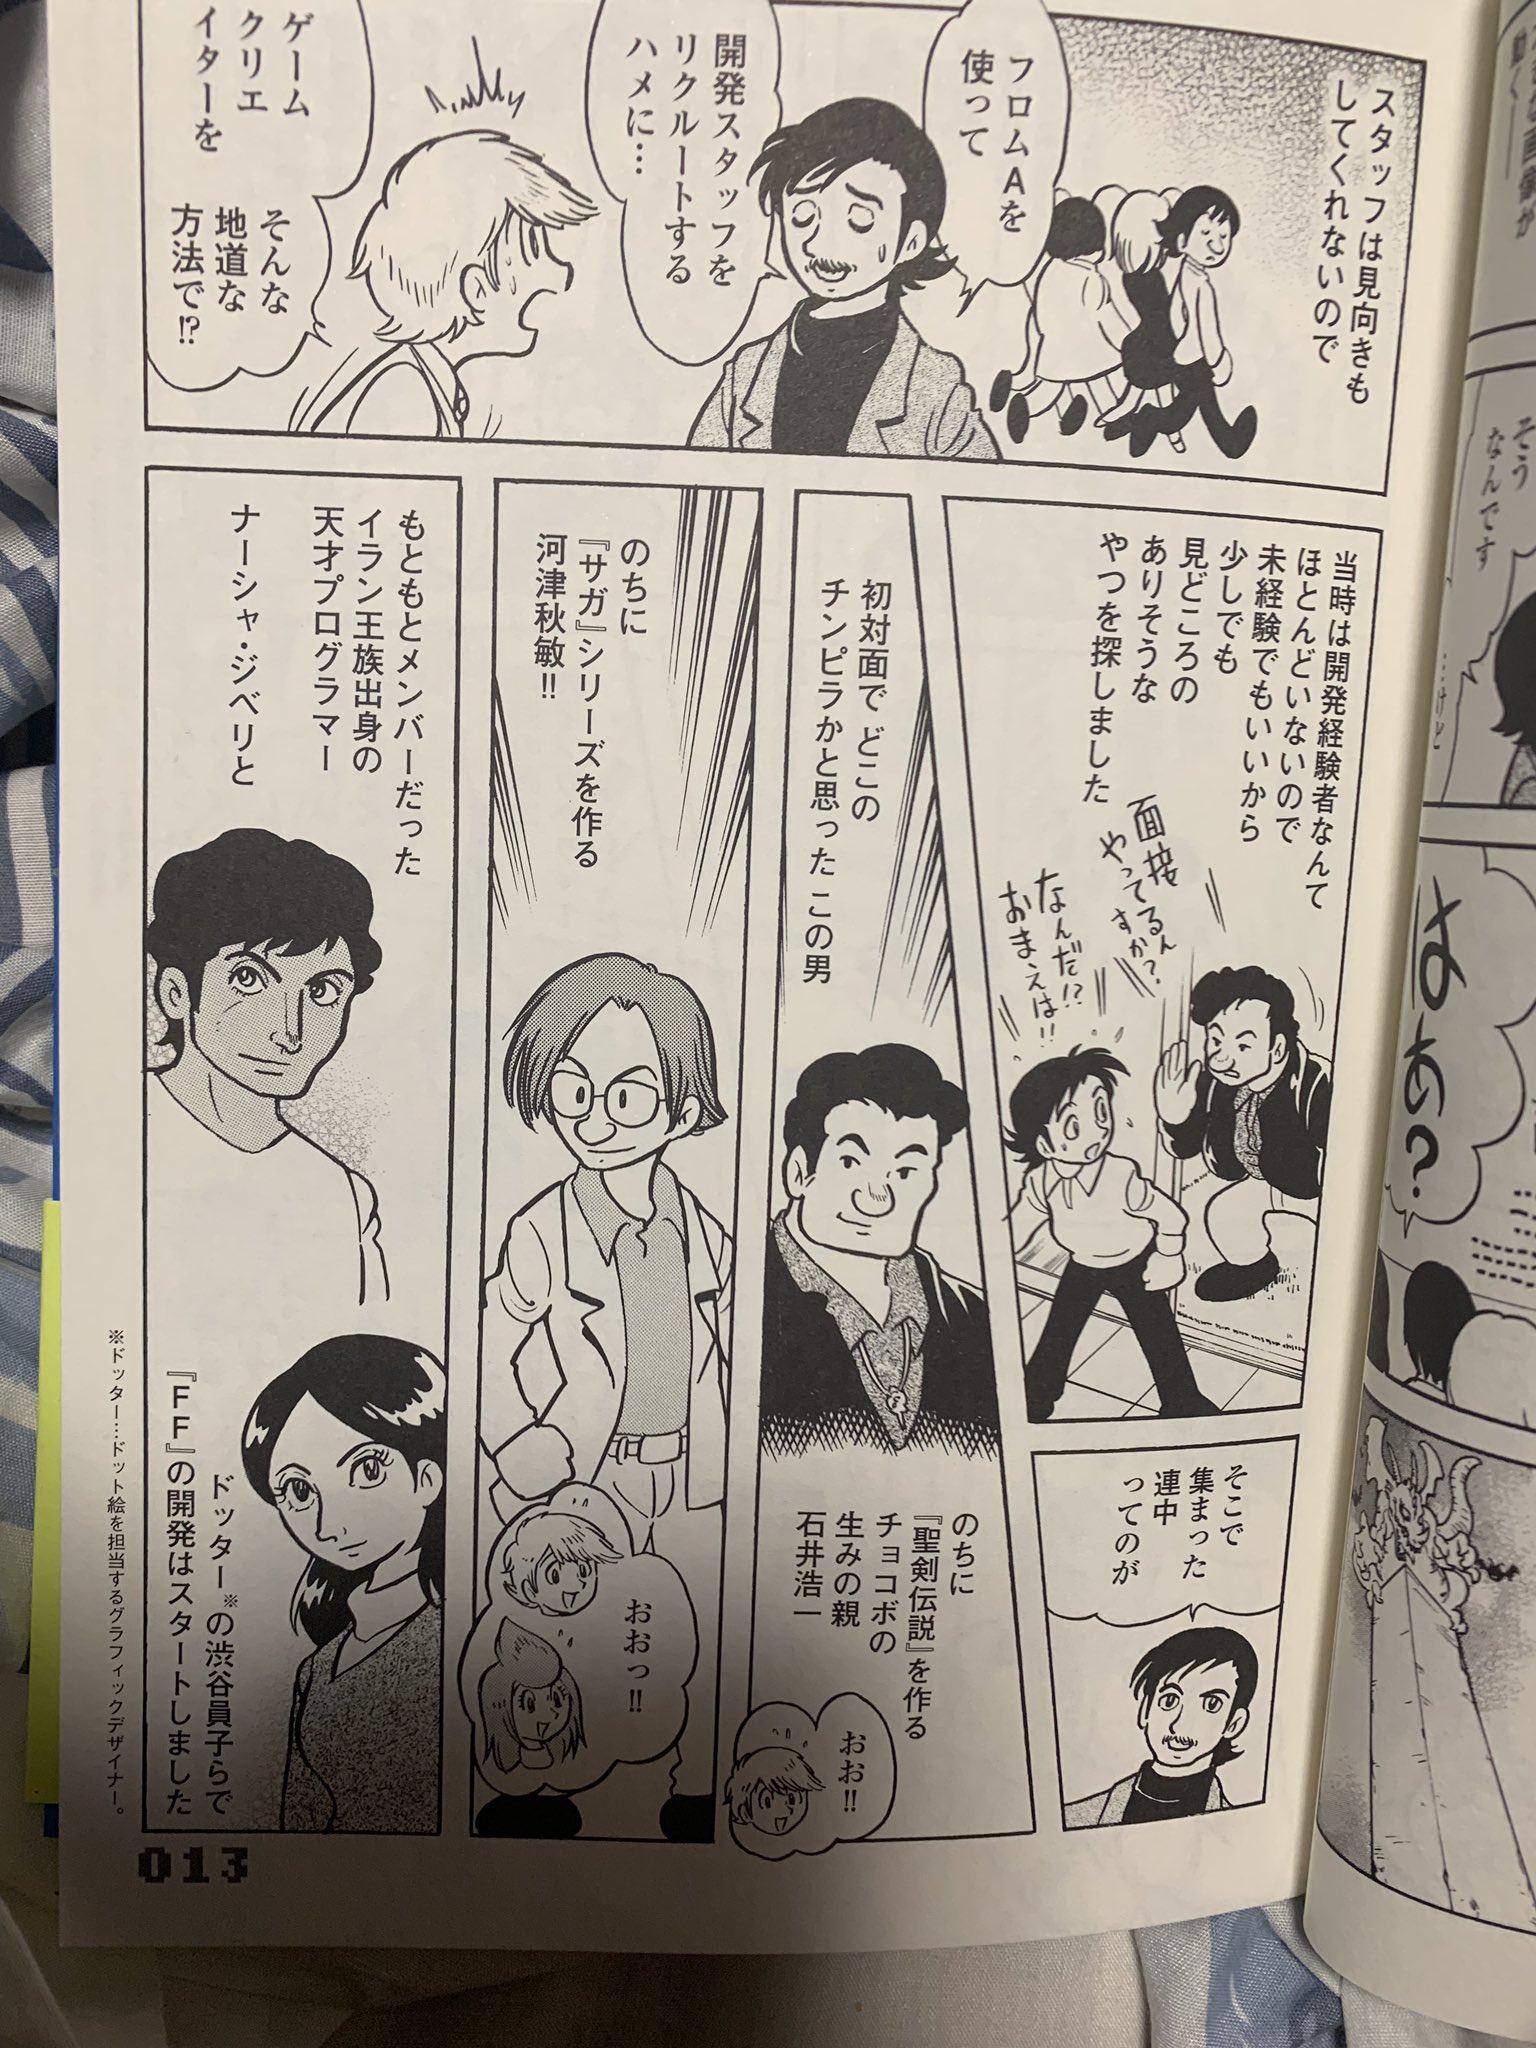 村田雄介 Ponimoe えええ 王族出身の天才プログラマーって 漫画みたいですね 貴重な情報ありがとうございます Twitter